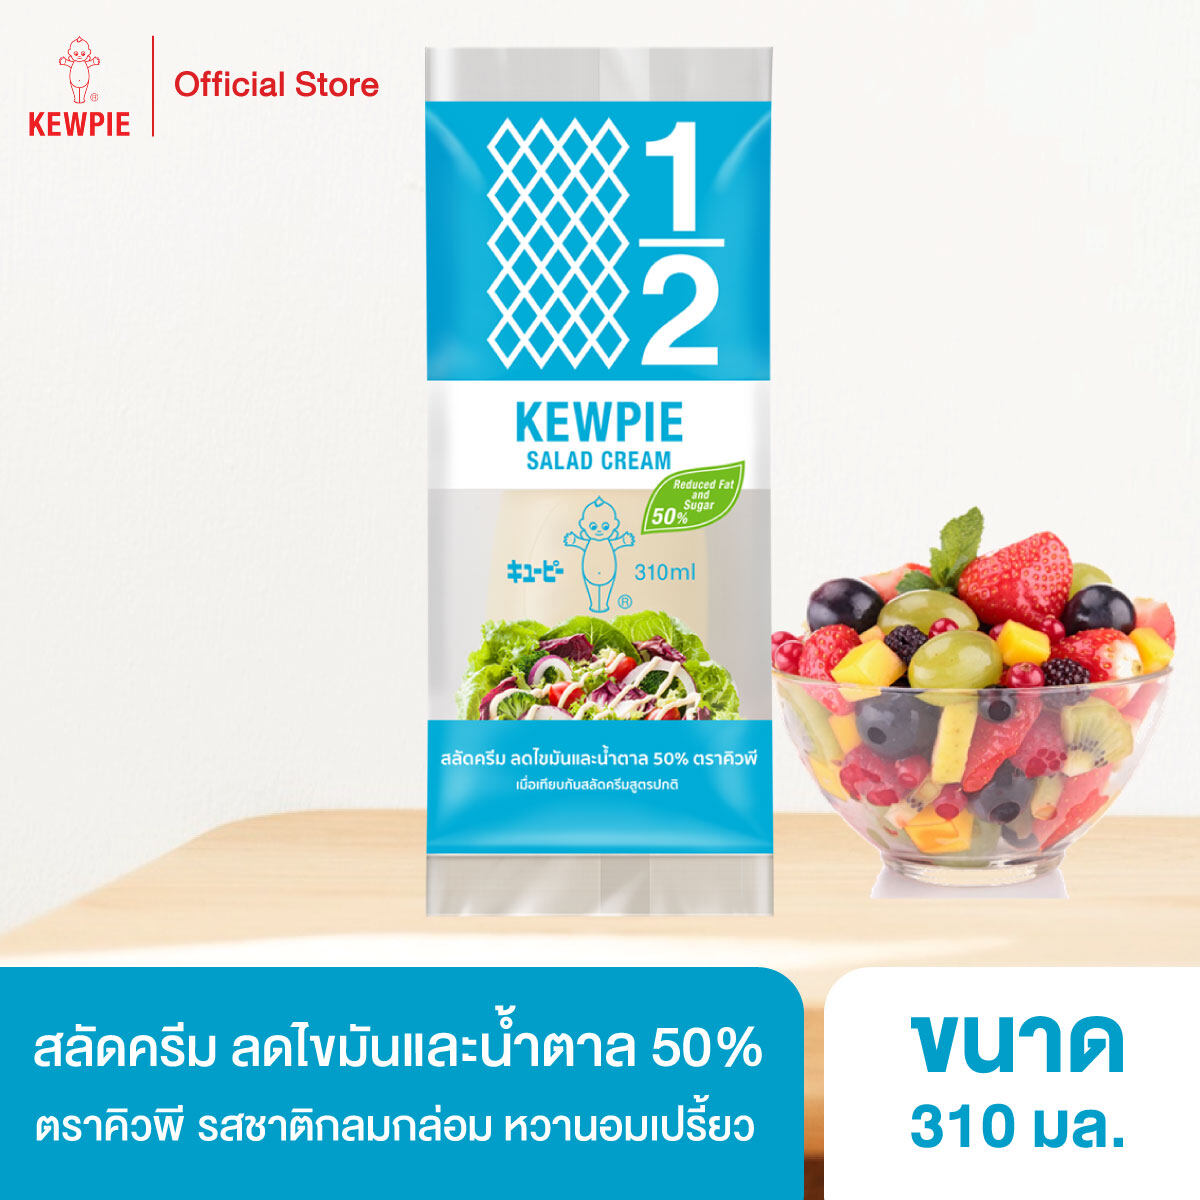 KEWPIE 50% Reduced Fat and Sugar Salad Cream สลัดครีมคิวพี ลดไขมันและน้ำตาล 50% คิวพี ขนาด 310 ml.